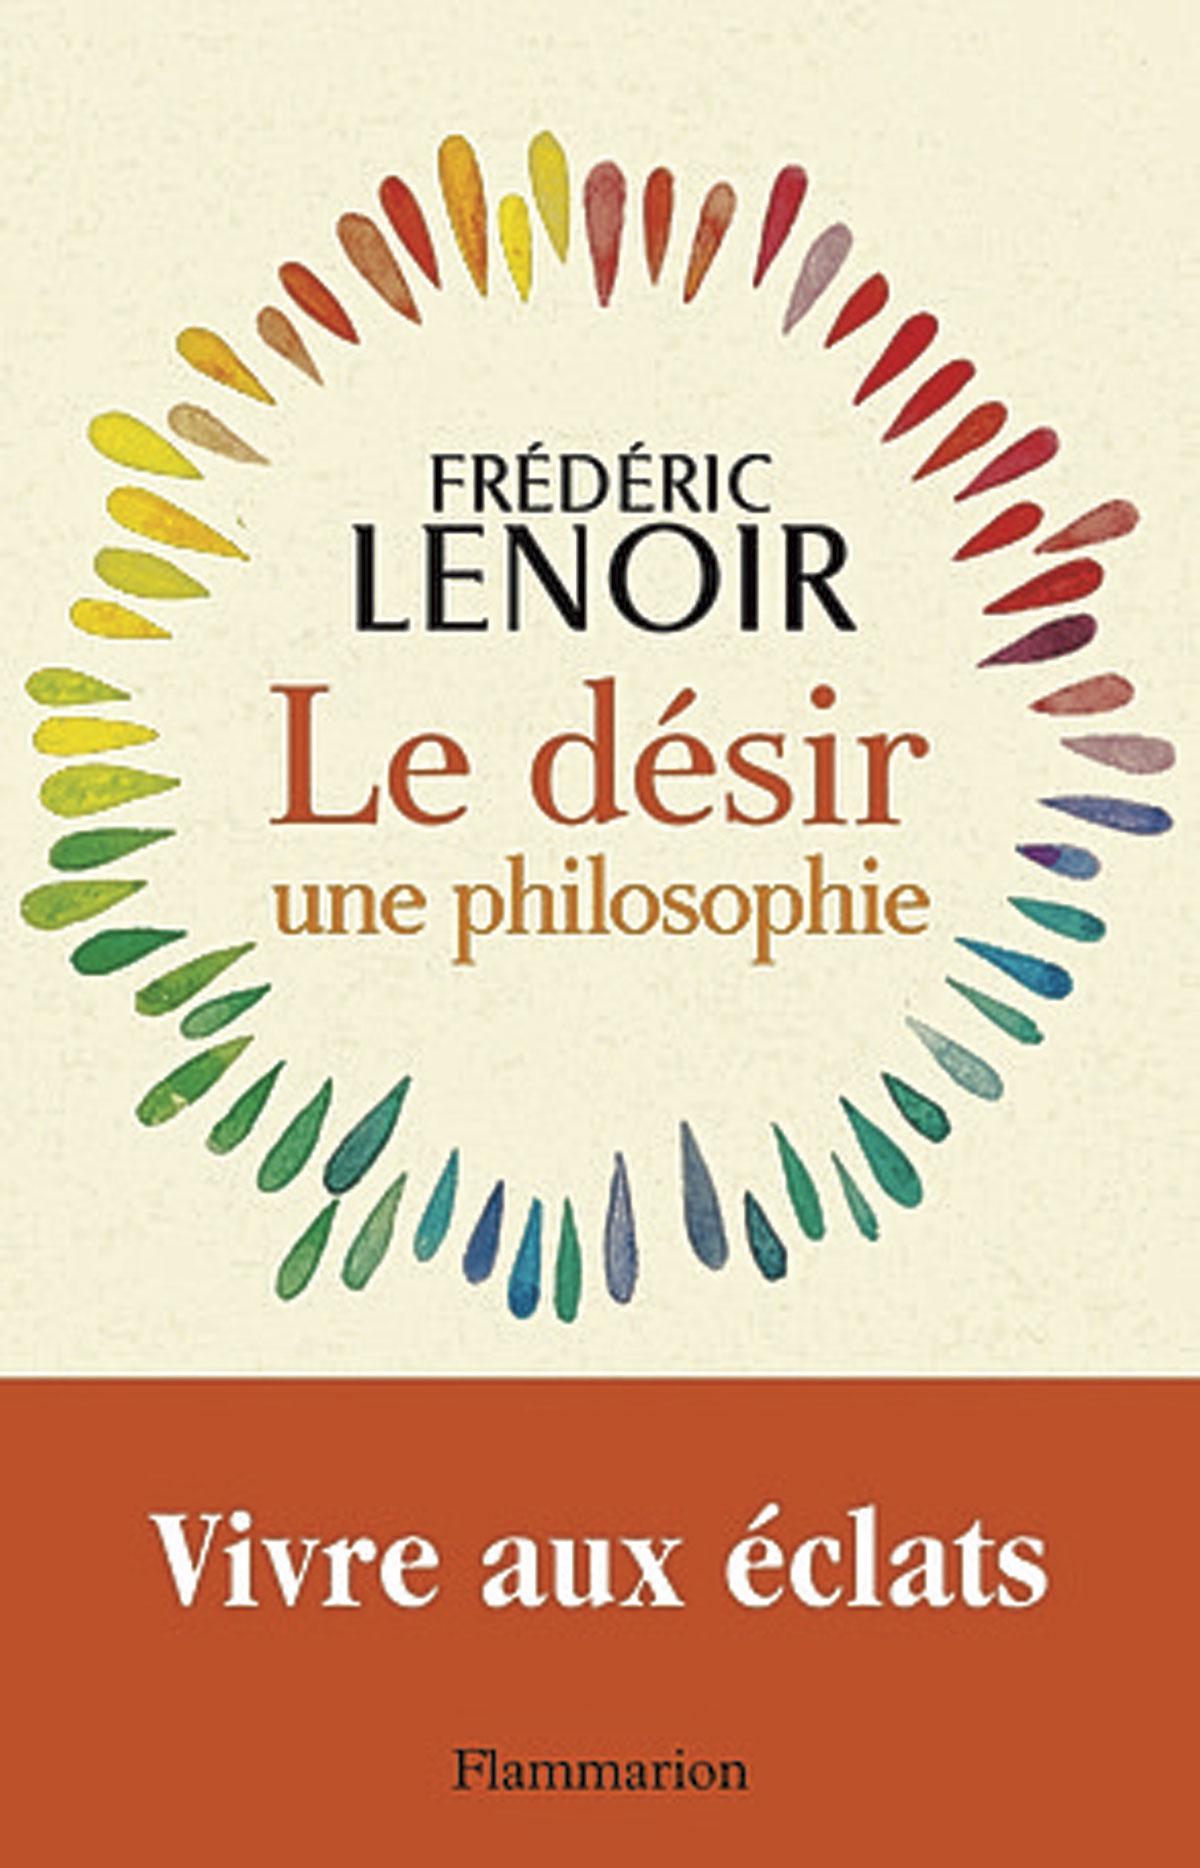 (1) Le Désir, une philosophie, par Frédéric Lenoir, Flammarion, 240 p.